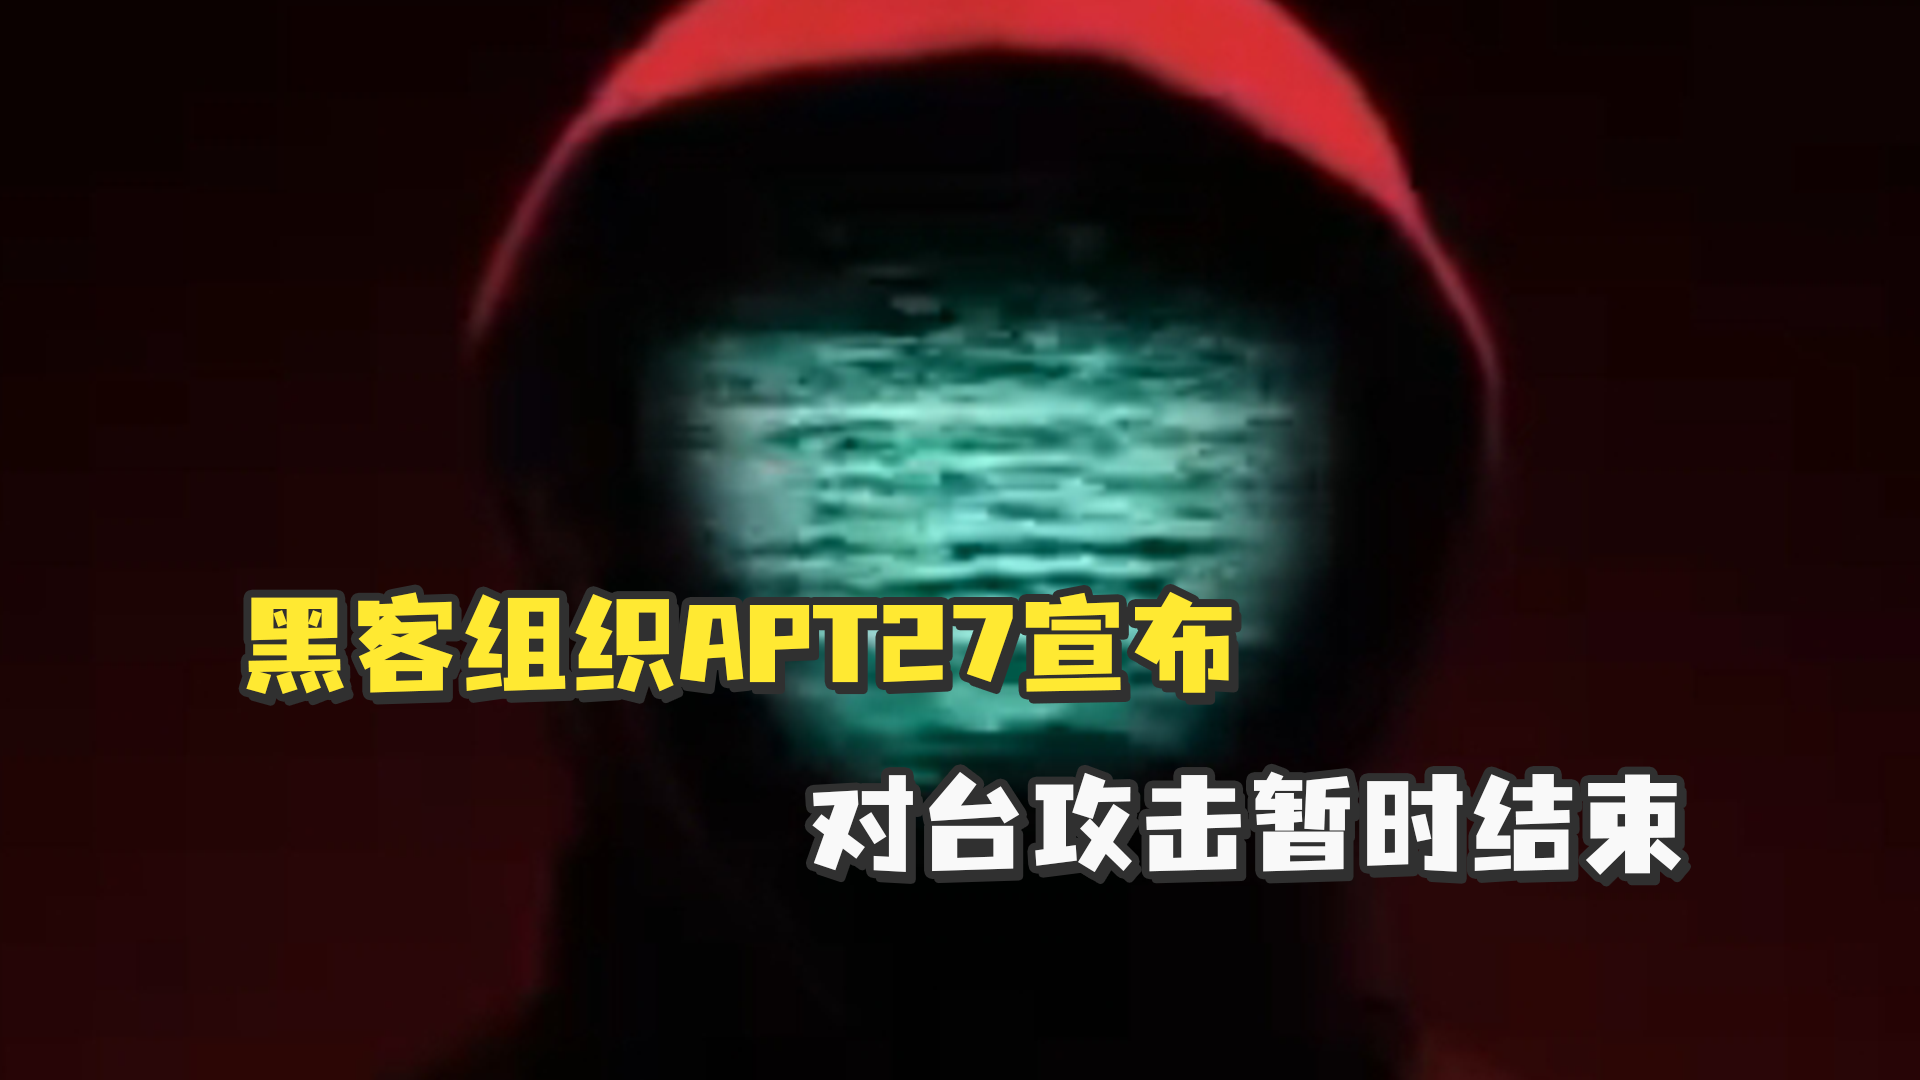 黑客组织APT27宣布对台攻击暂时结束，并警告台当局：如果继续挑事，我们还会回来